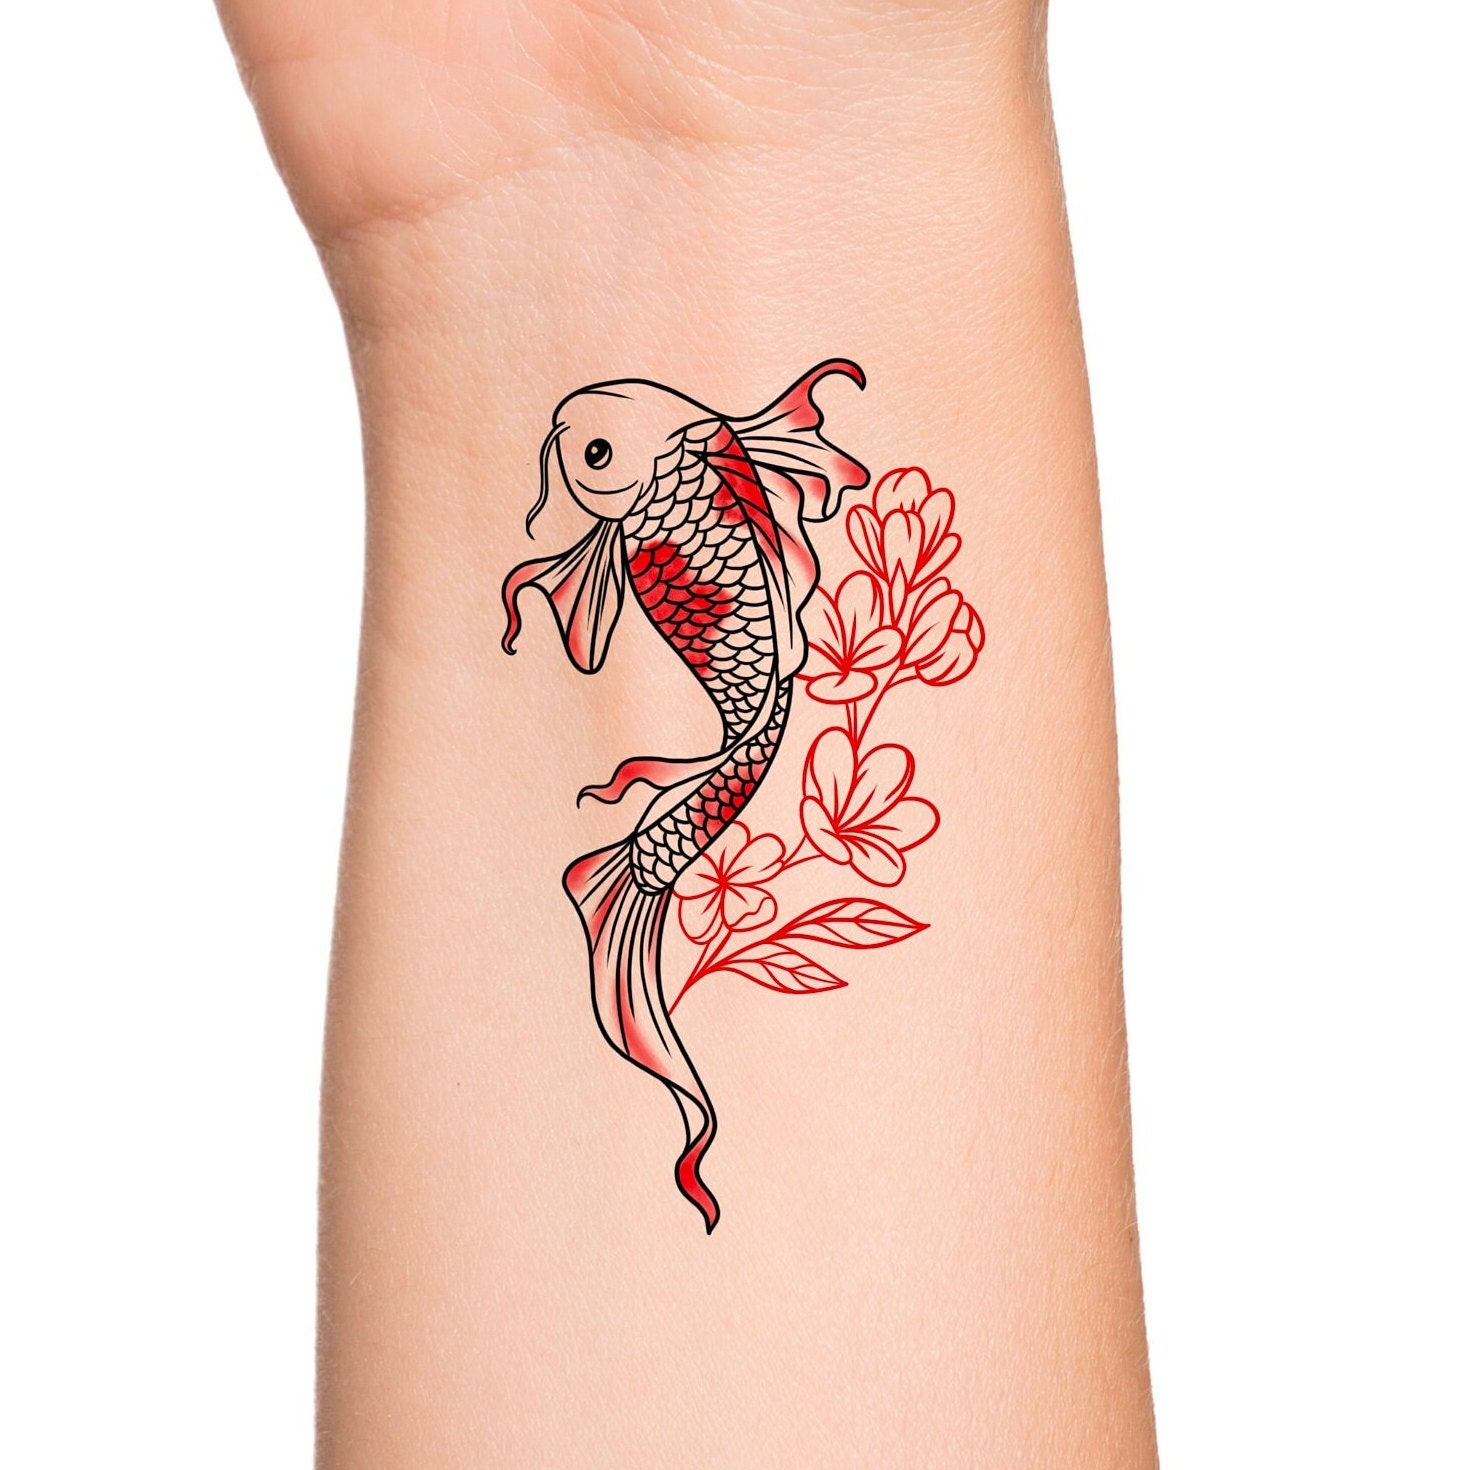 Koi Fish Tattoo: Bạn muốn có một chiếc hình xăm về cá Koi ấn tượng? Năm 2024, các nghệ sĩ tại các studio xăm mình đang sáng tạo ra những mẫu hình xăm Koi ngẫu hứng và đầy sức sống. Hãy nhấn vào hình ảnh để khám phá các biến thể mới nhất của hình xăm cá Koi này.

Watercolor Japanese Tattoo: Nghệ thuật xăm hình nước sơn của Nhật Bản đã trở thành một xu hướng phổ biến trong giới xăm mình hiện nay. Năm 2024, các nghệ sĩ tại các studio xăm mình đang tạo ra những bản thiết kế hình xăm nước sơn Nhật Bản đẹp mắt và đặc sắc nhất. Nhấn vào hình ảnh để chiêm ngưỡng những tác phẩm nghệ thuật tuyệt vời này.

Lotus Tattoo: Hoa sen được xem là biểu tượng của sự tinh khiết và sự thanh cao. Năm 2024, các nghệ sĩ tại các studio xăm mình đang tận dụng sự đẹp và sự ý nghĩa của hoa sen để tạo ra những hình xăm độc đáo và đầy thú vị. Hãy nhấn vào hình ảnh để chiêm ngưỡng những tác phẩm nghệ thuật tuyệt vời này.

Freehand Tattoo: Bạn muốn sở hữu một hình xăm độc đáo và cá tính? Năm 2024, các nghệ sĩ tại các studio xăm mình đang trổ tài với kỹ thuật xăm tự do để tạo ra những tác phẩm nghệ thuật độc đáo và tinh tế nhất. Nhấn vào hình ảnh để khám phá thế giới tuyệt vời của xăm mình tự do.